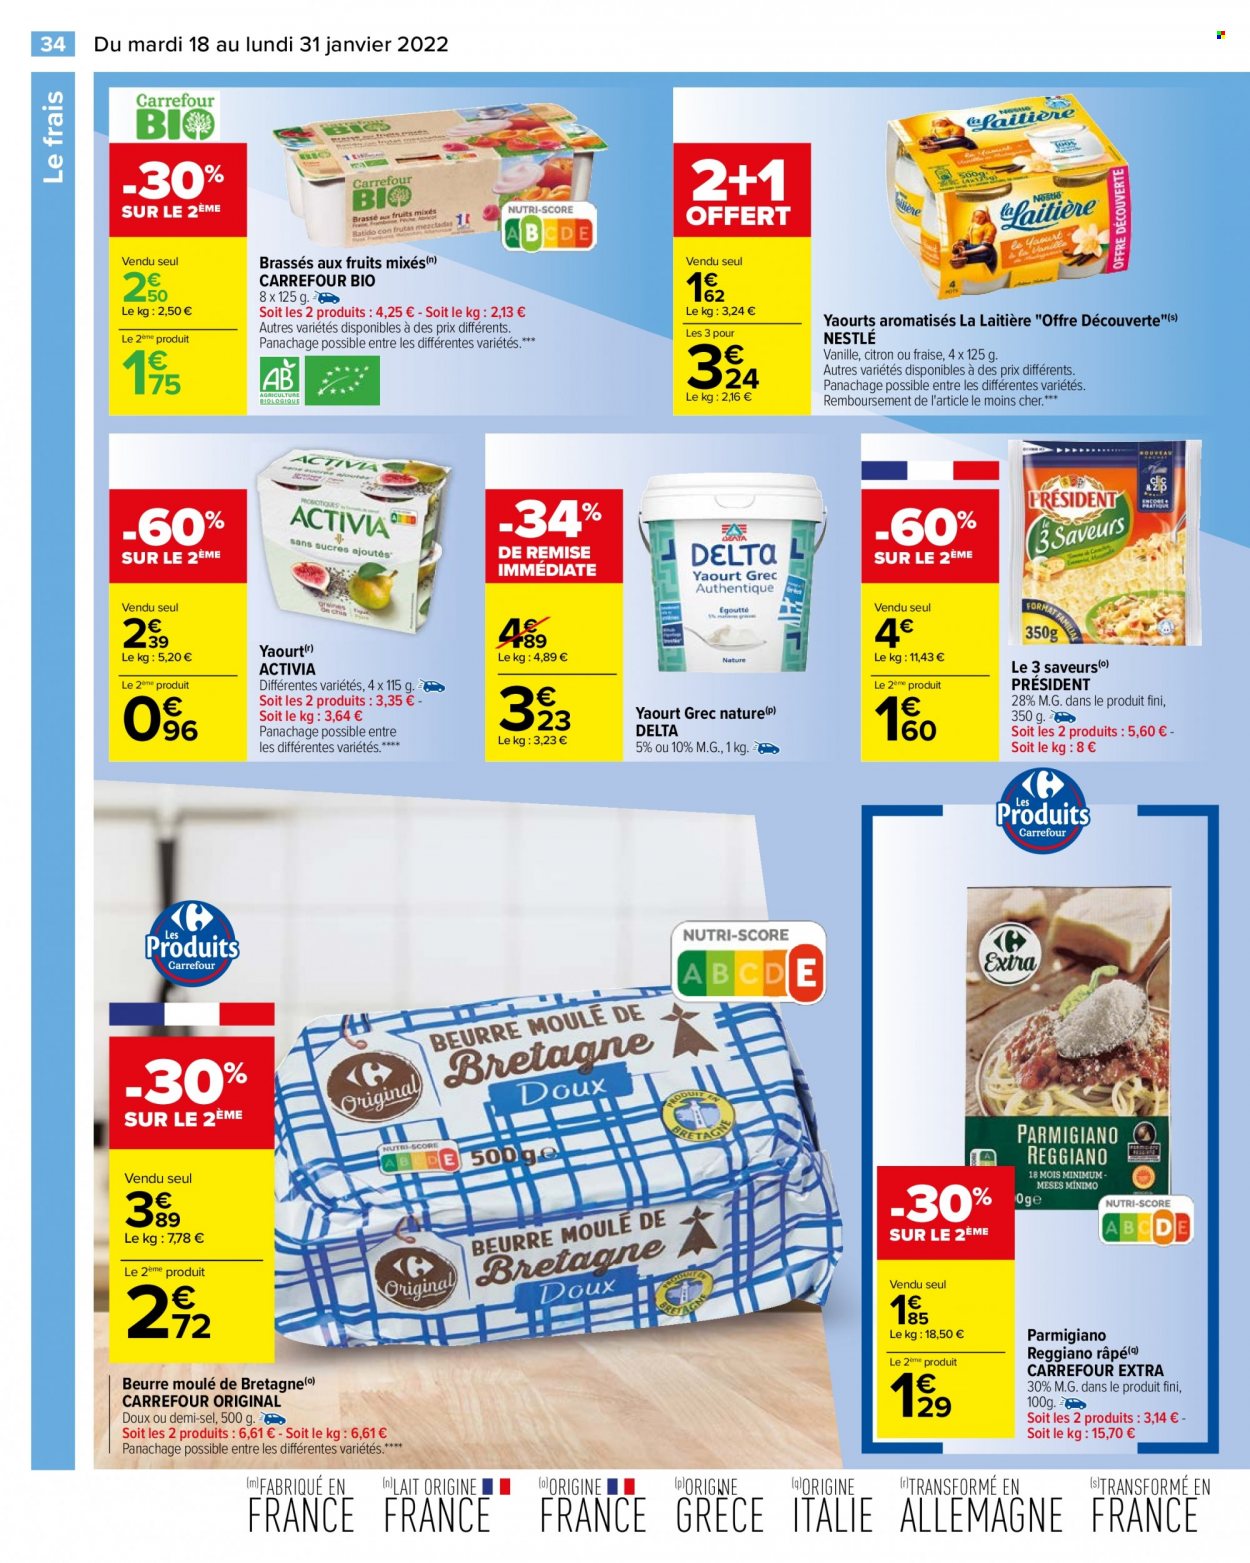 thumbnail - Catalogue Carrefour Hypermarchés - 18/01/2022 - 31/01/2022 - Produits soldés - Président, Activia, yaourt, Nestlé, dessert au lait, lait, beurre. Page 34.